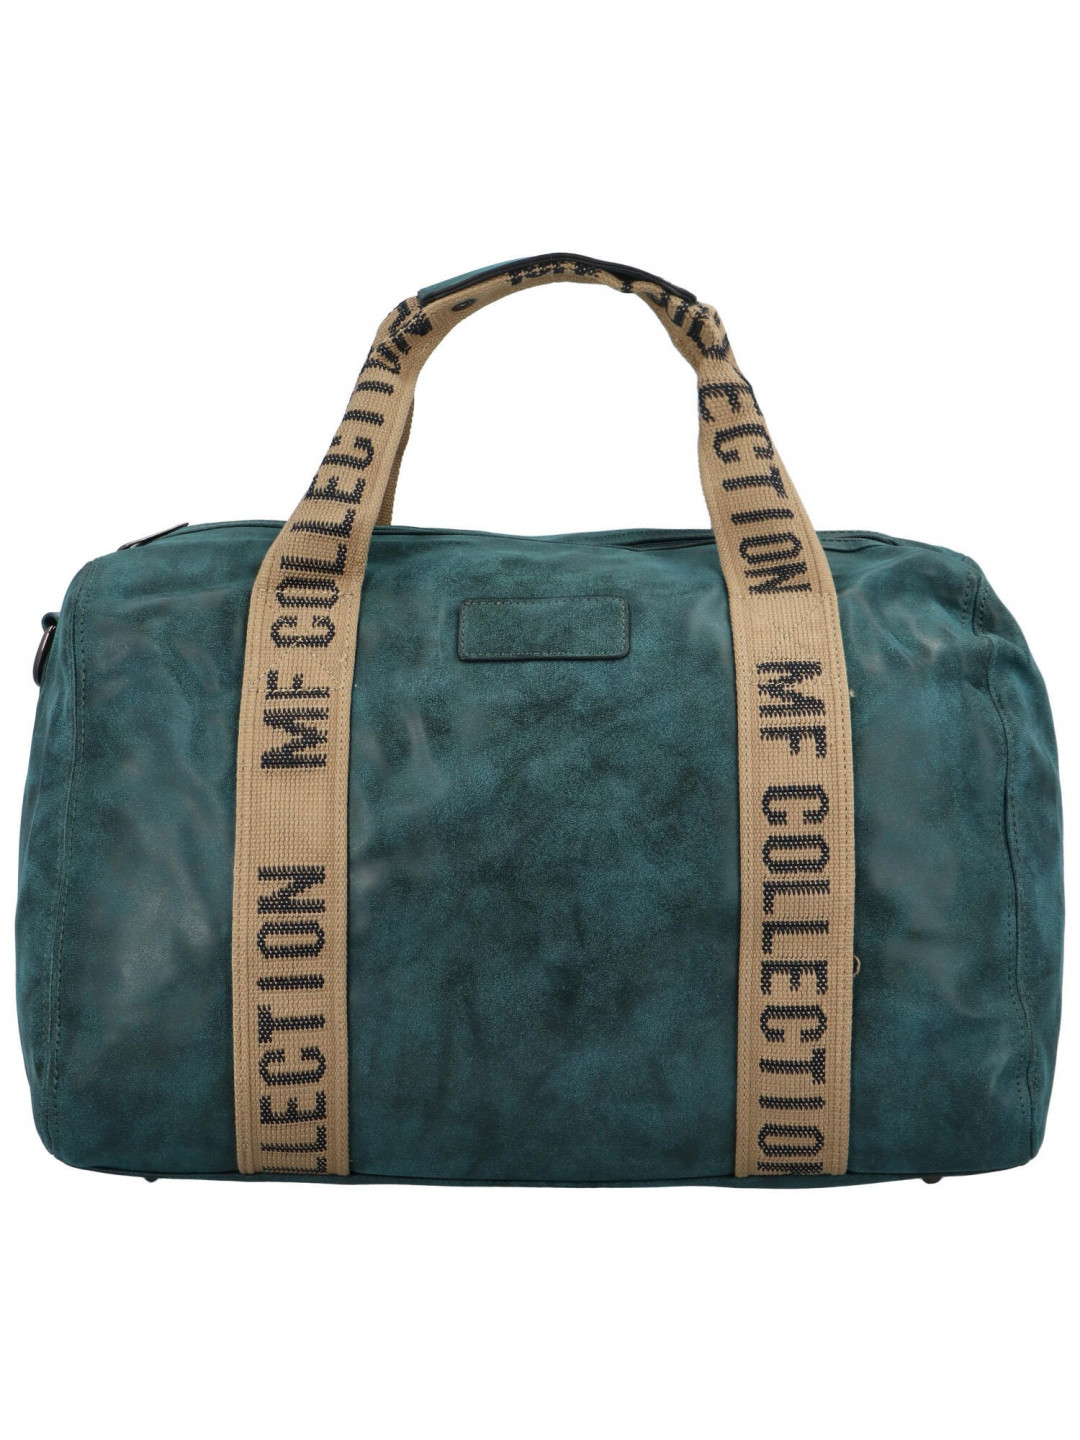 Cestovní dámská koženková kabelka Gita zimní kolekce zelená